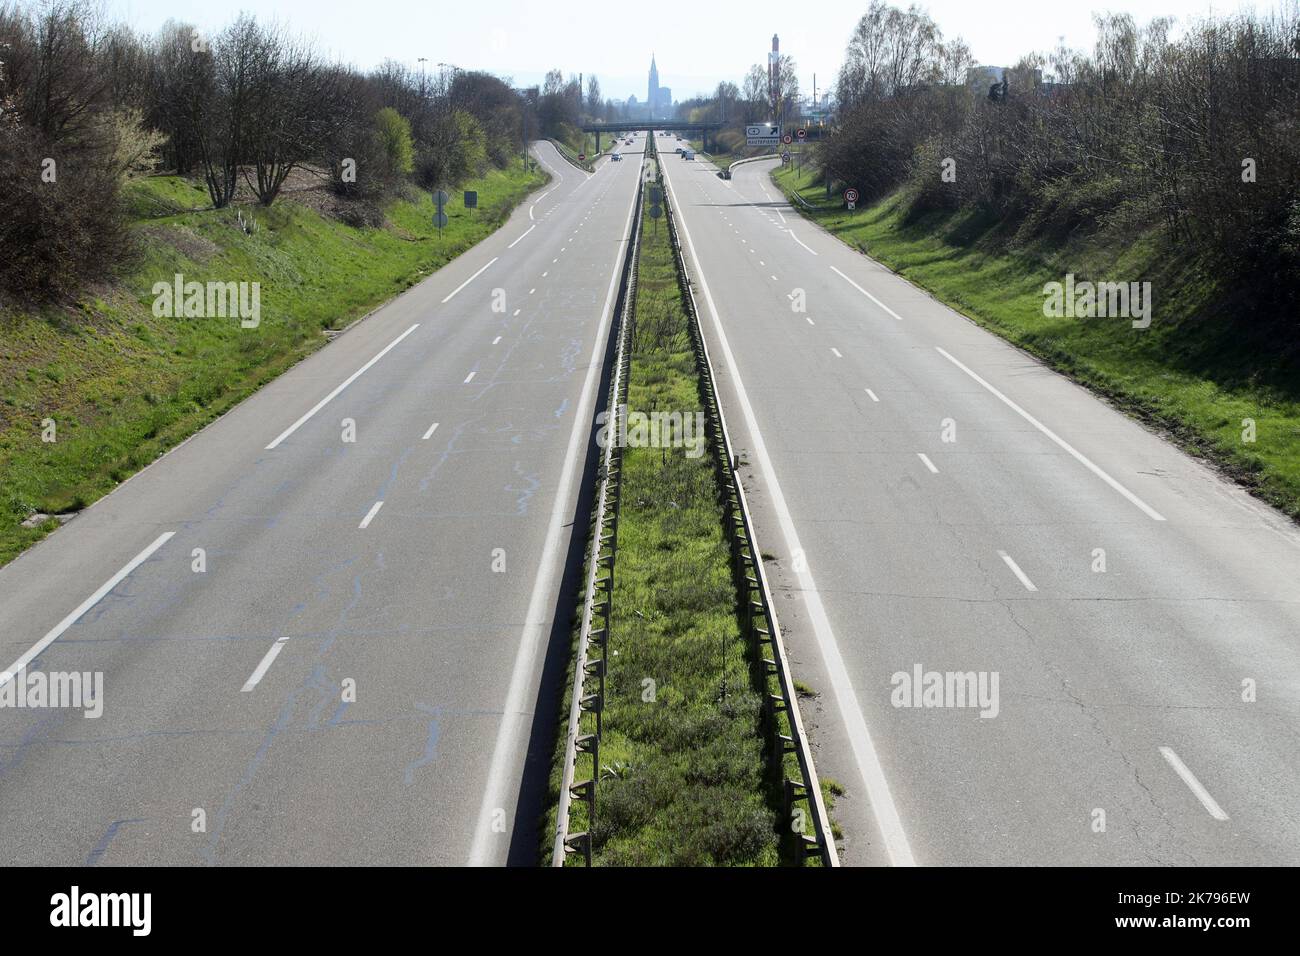 2020/03/24. Coronavirus. An empty highway of vehicles during the coronavirus health crisis. Stock Photo